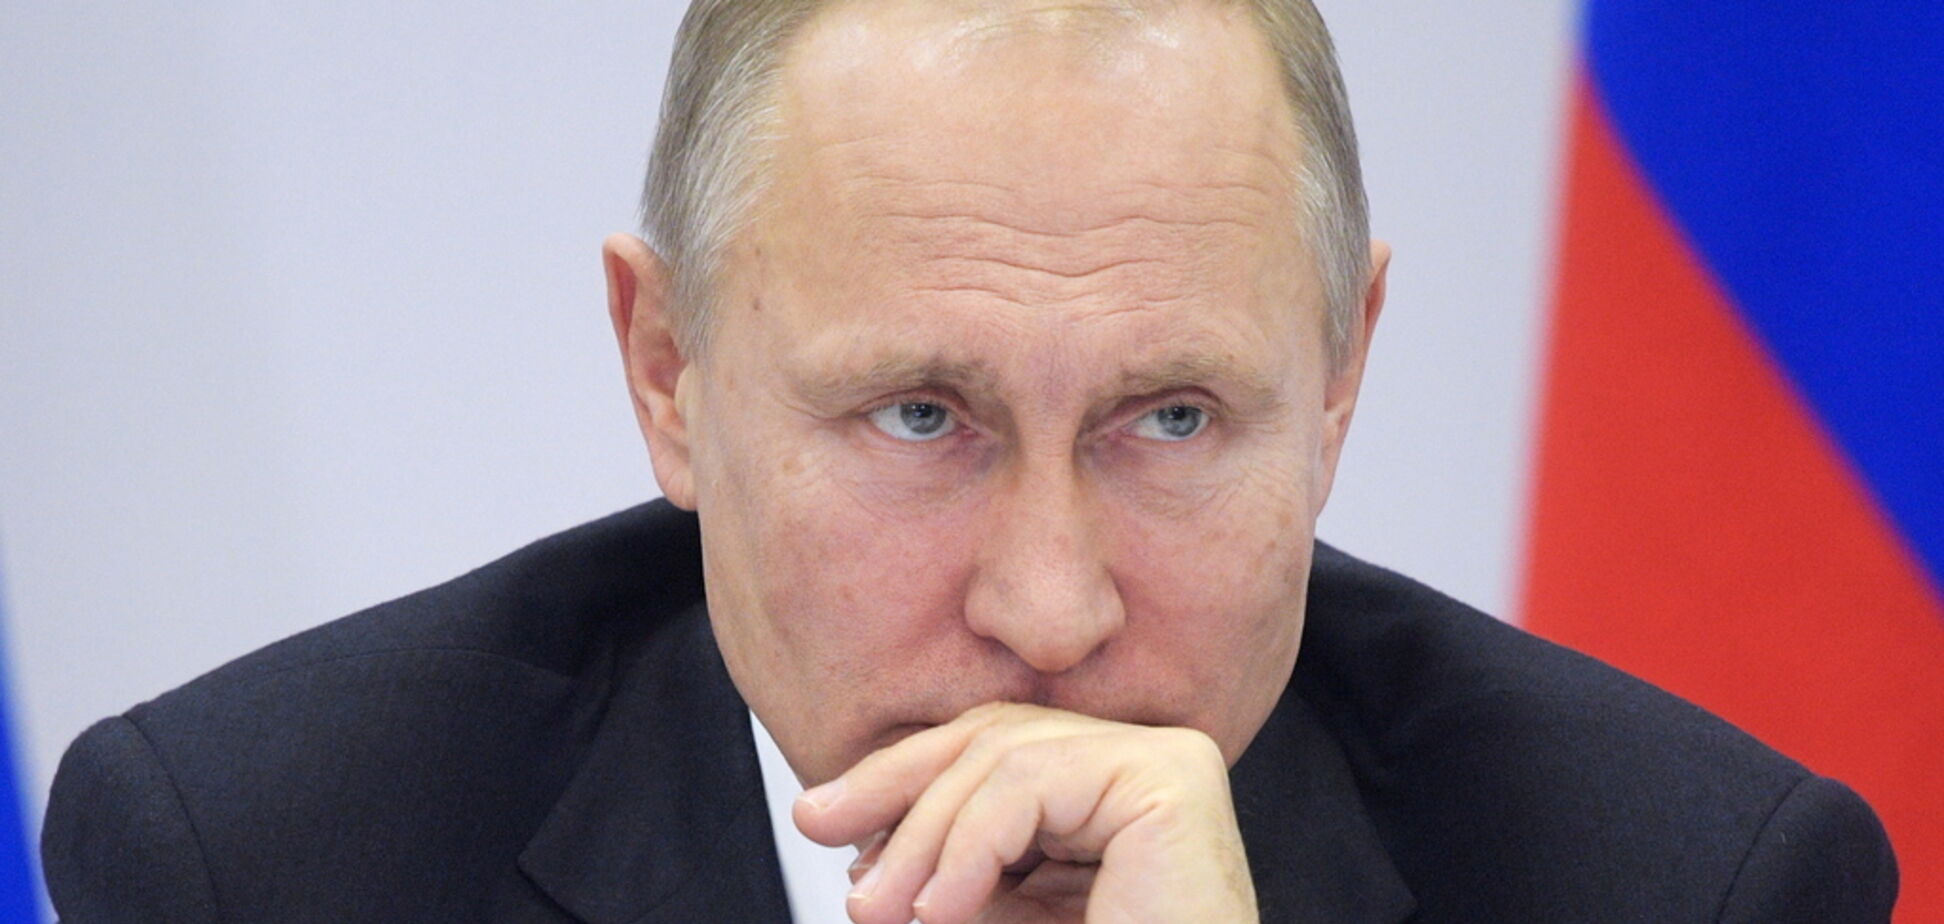 Убытки на 500 млрд: Путин признал бесполезность пенсионной реформы в России